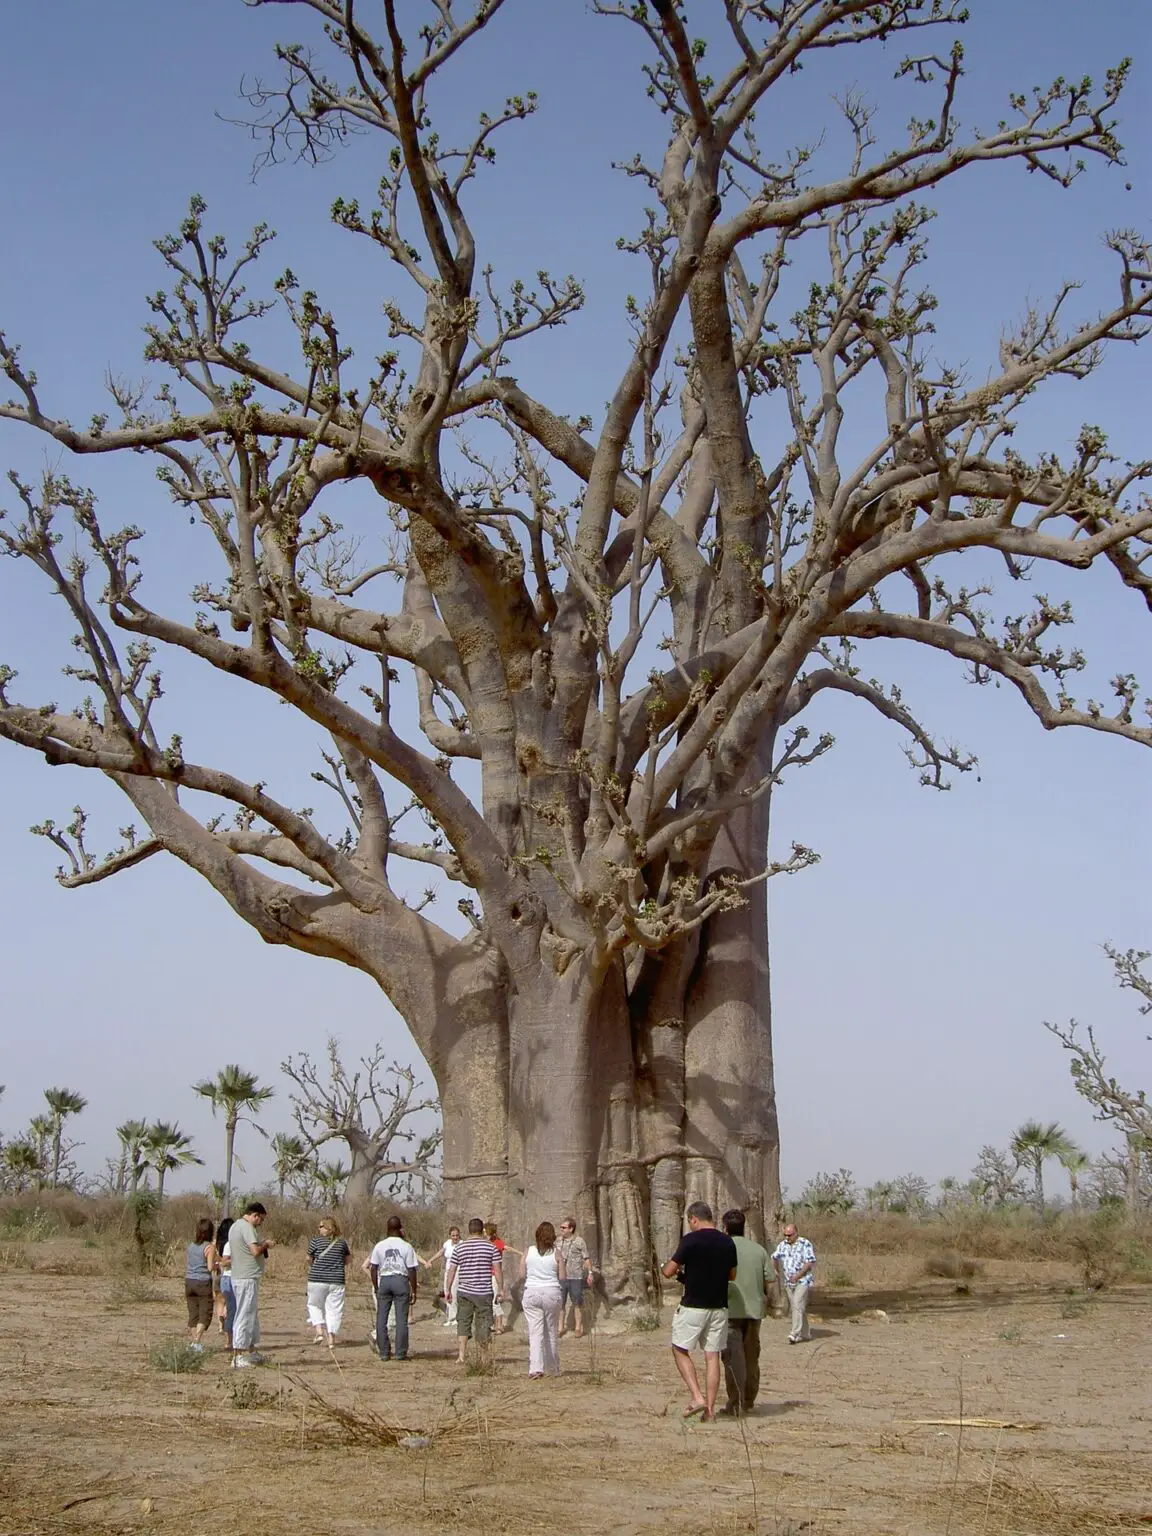 El árbol baobab: el árbol icónico de África y sus características menos conocidas